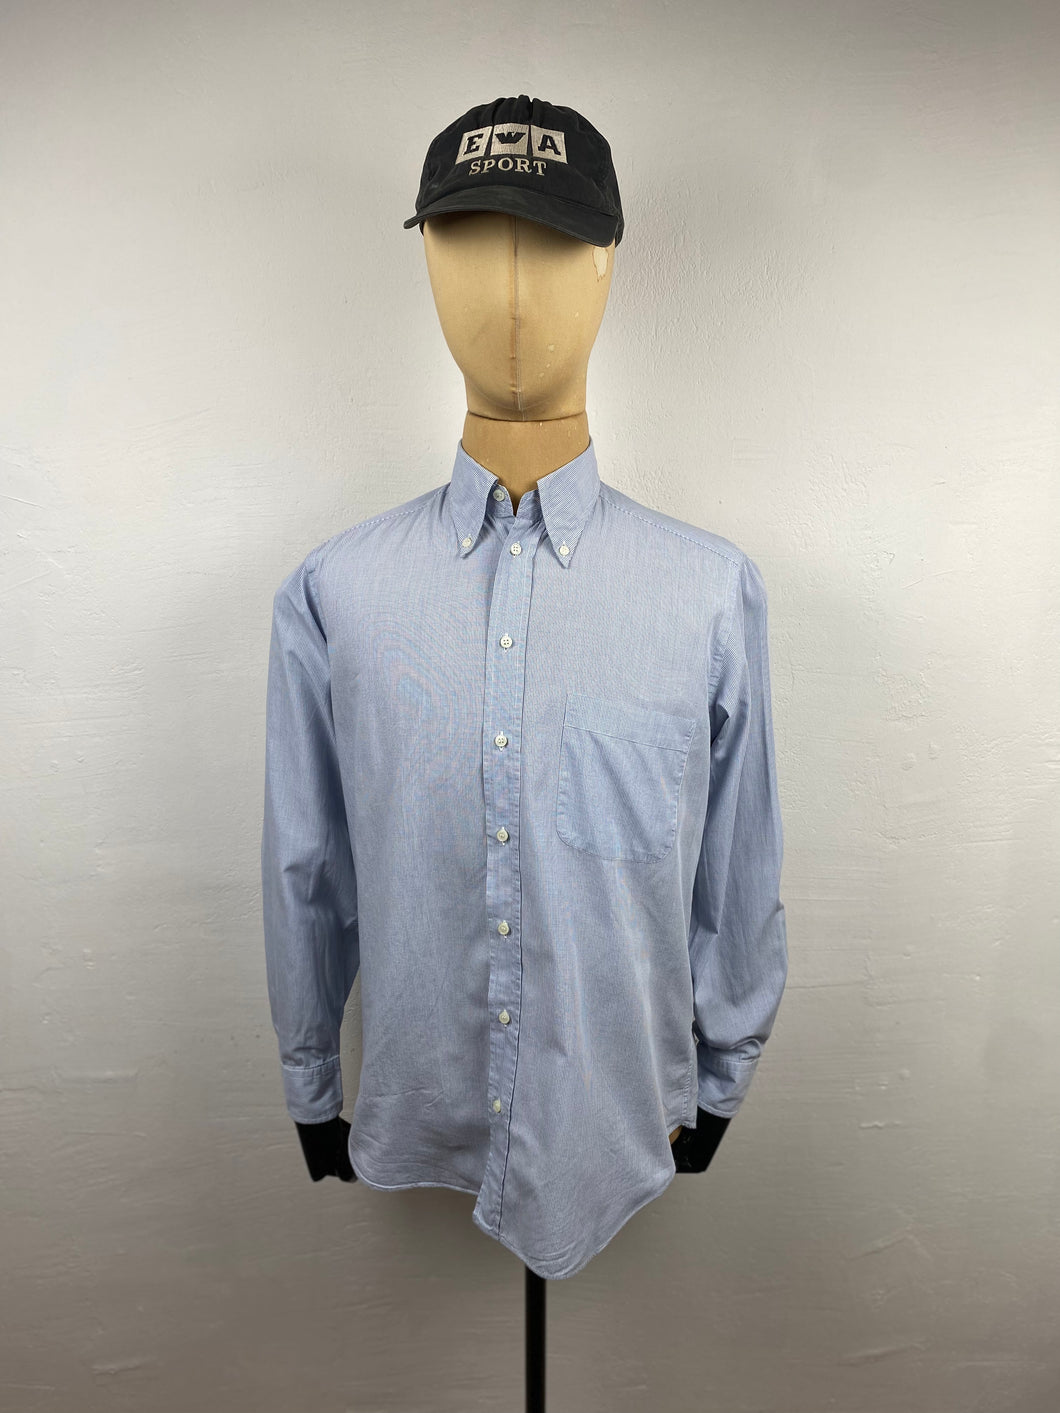 1990s Giorgio Armani LeCollezioni shirt blue checks